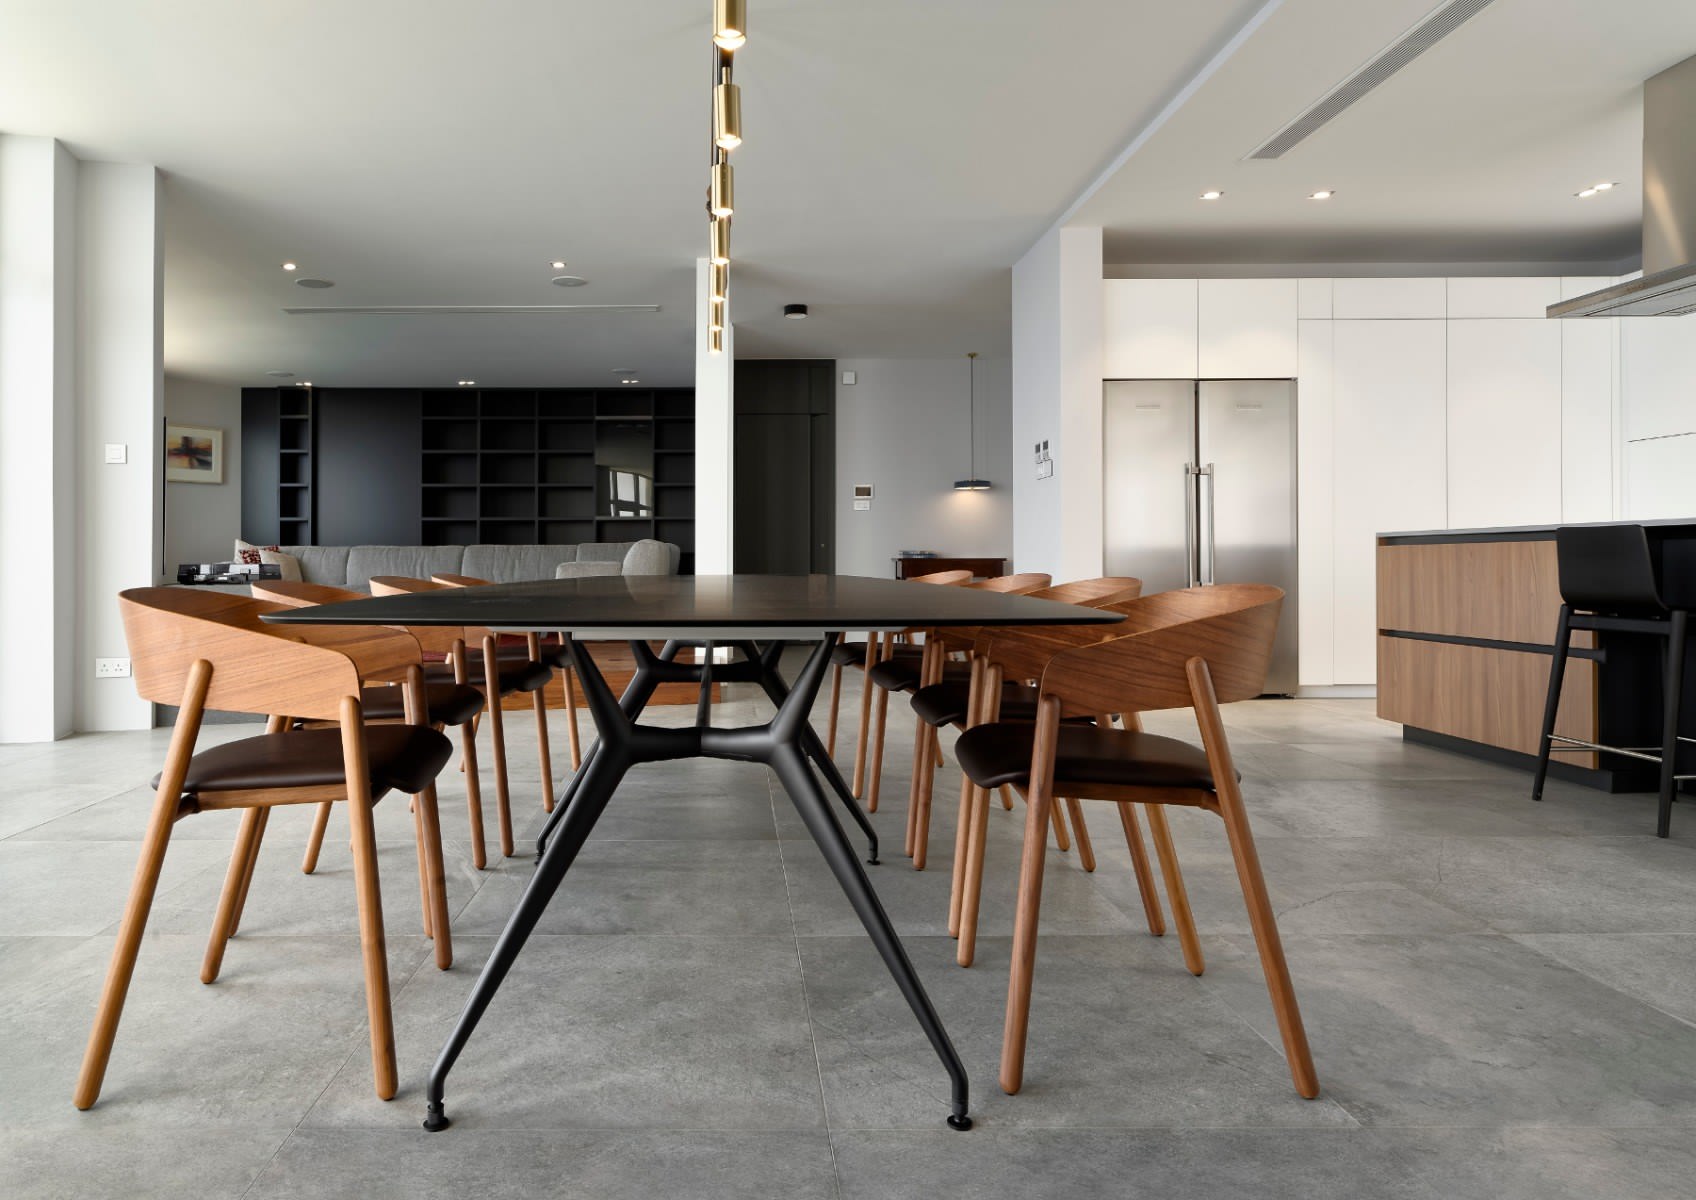 Furniture design Malta, progect CMC Arredamenti La Torre